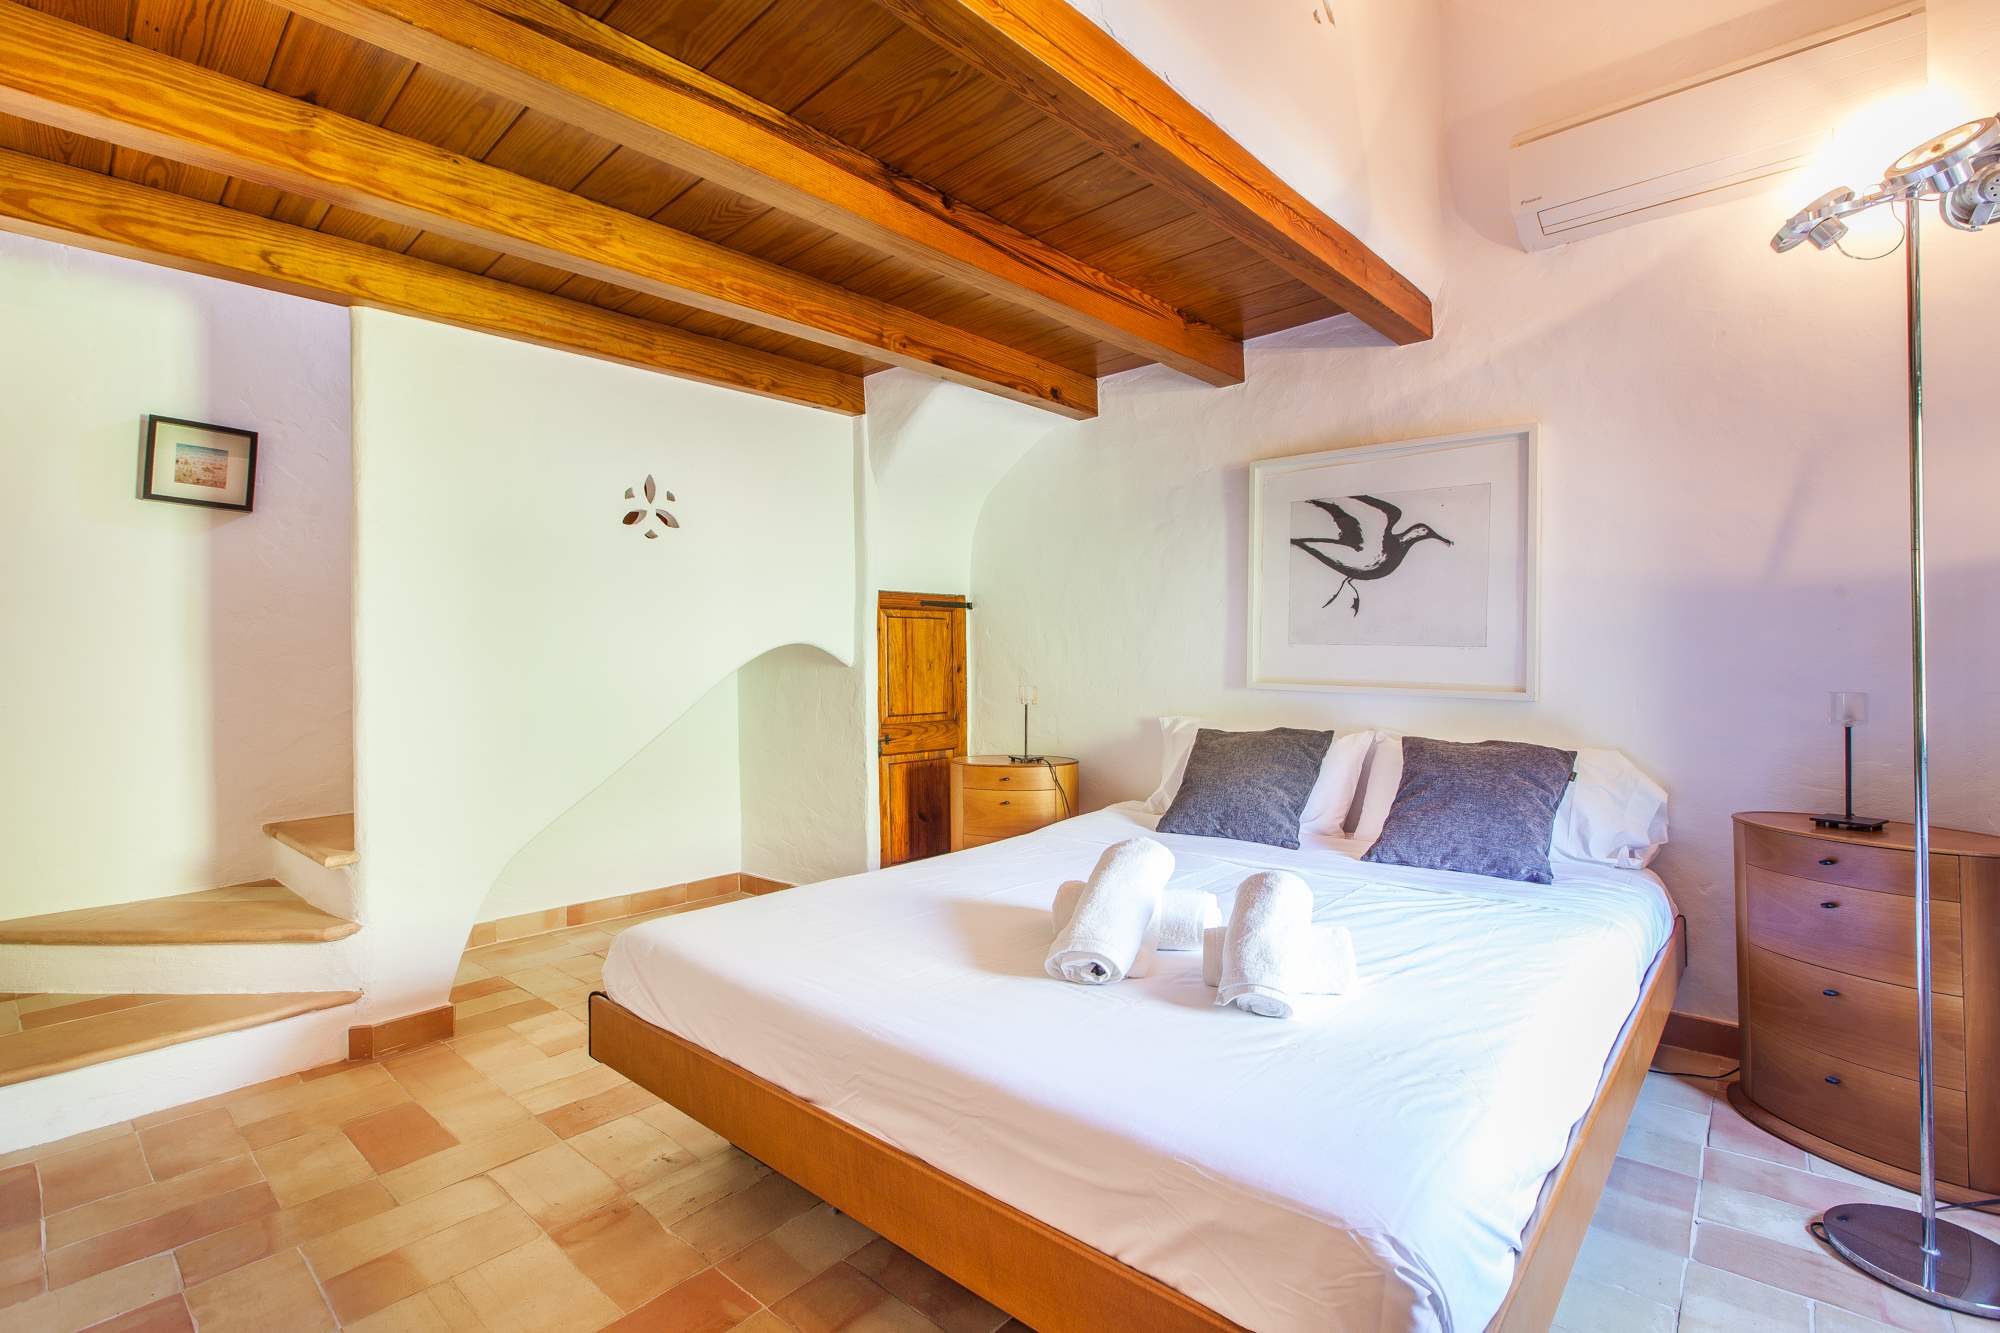 Es Clotal, 2 bedroom, 2 bedroom villa in Pollensa & Puerto Pollensa, Majorca Photo #20